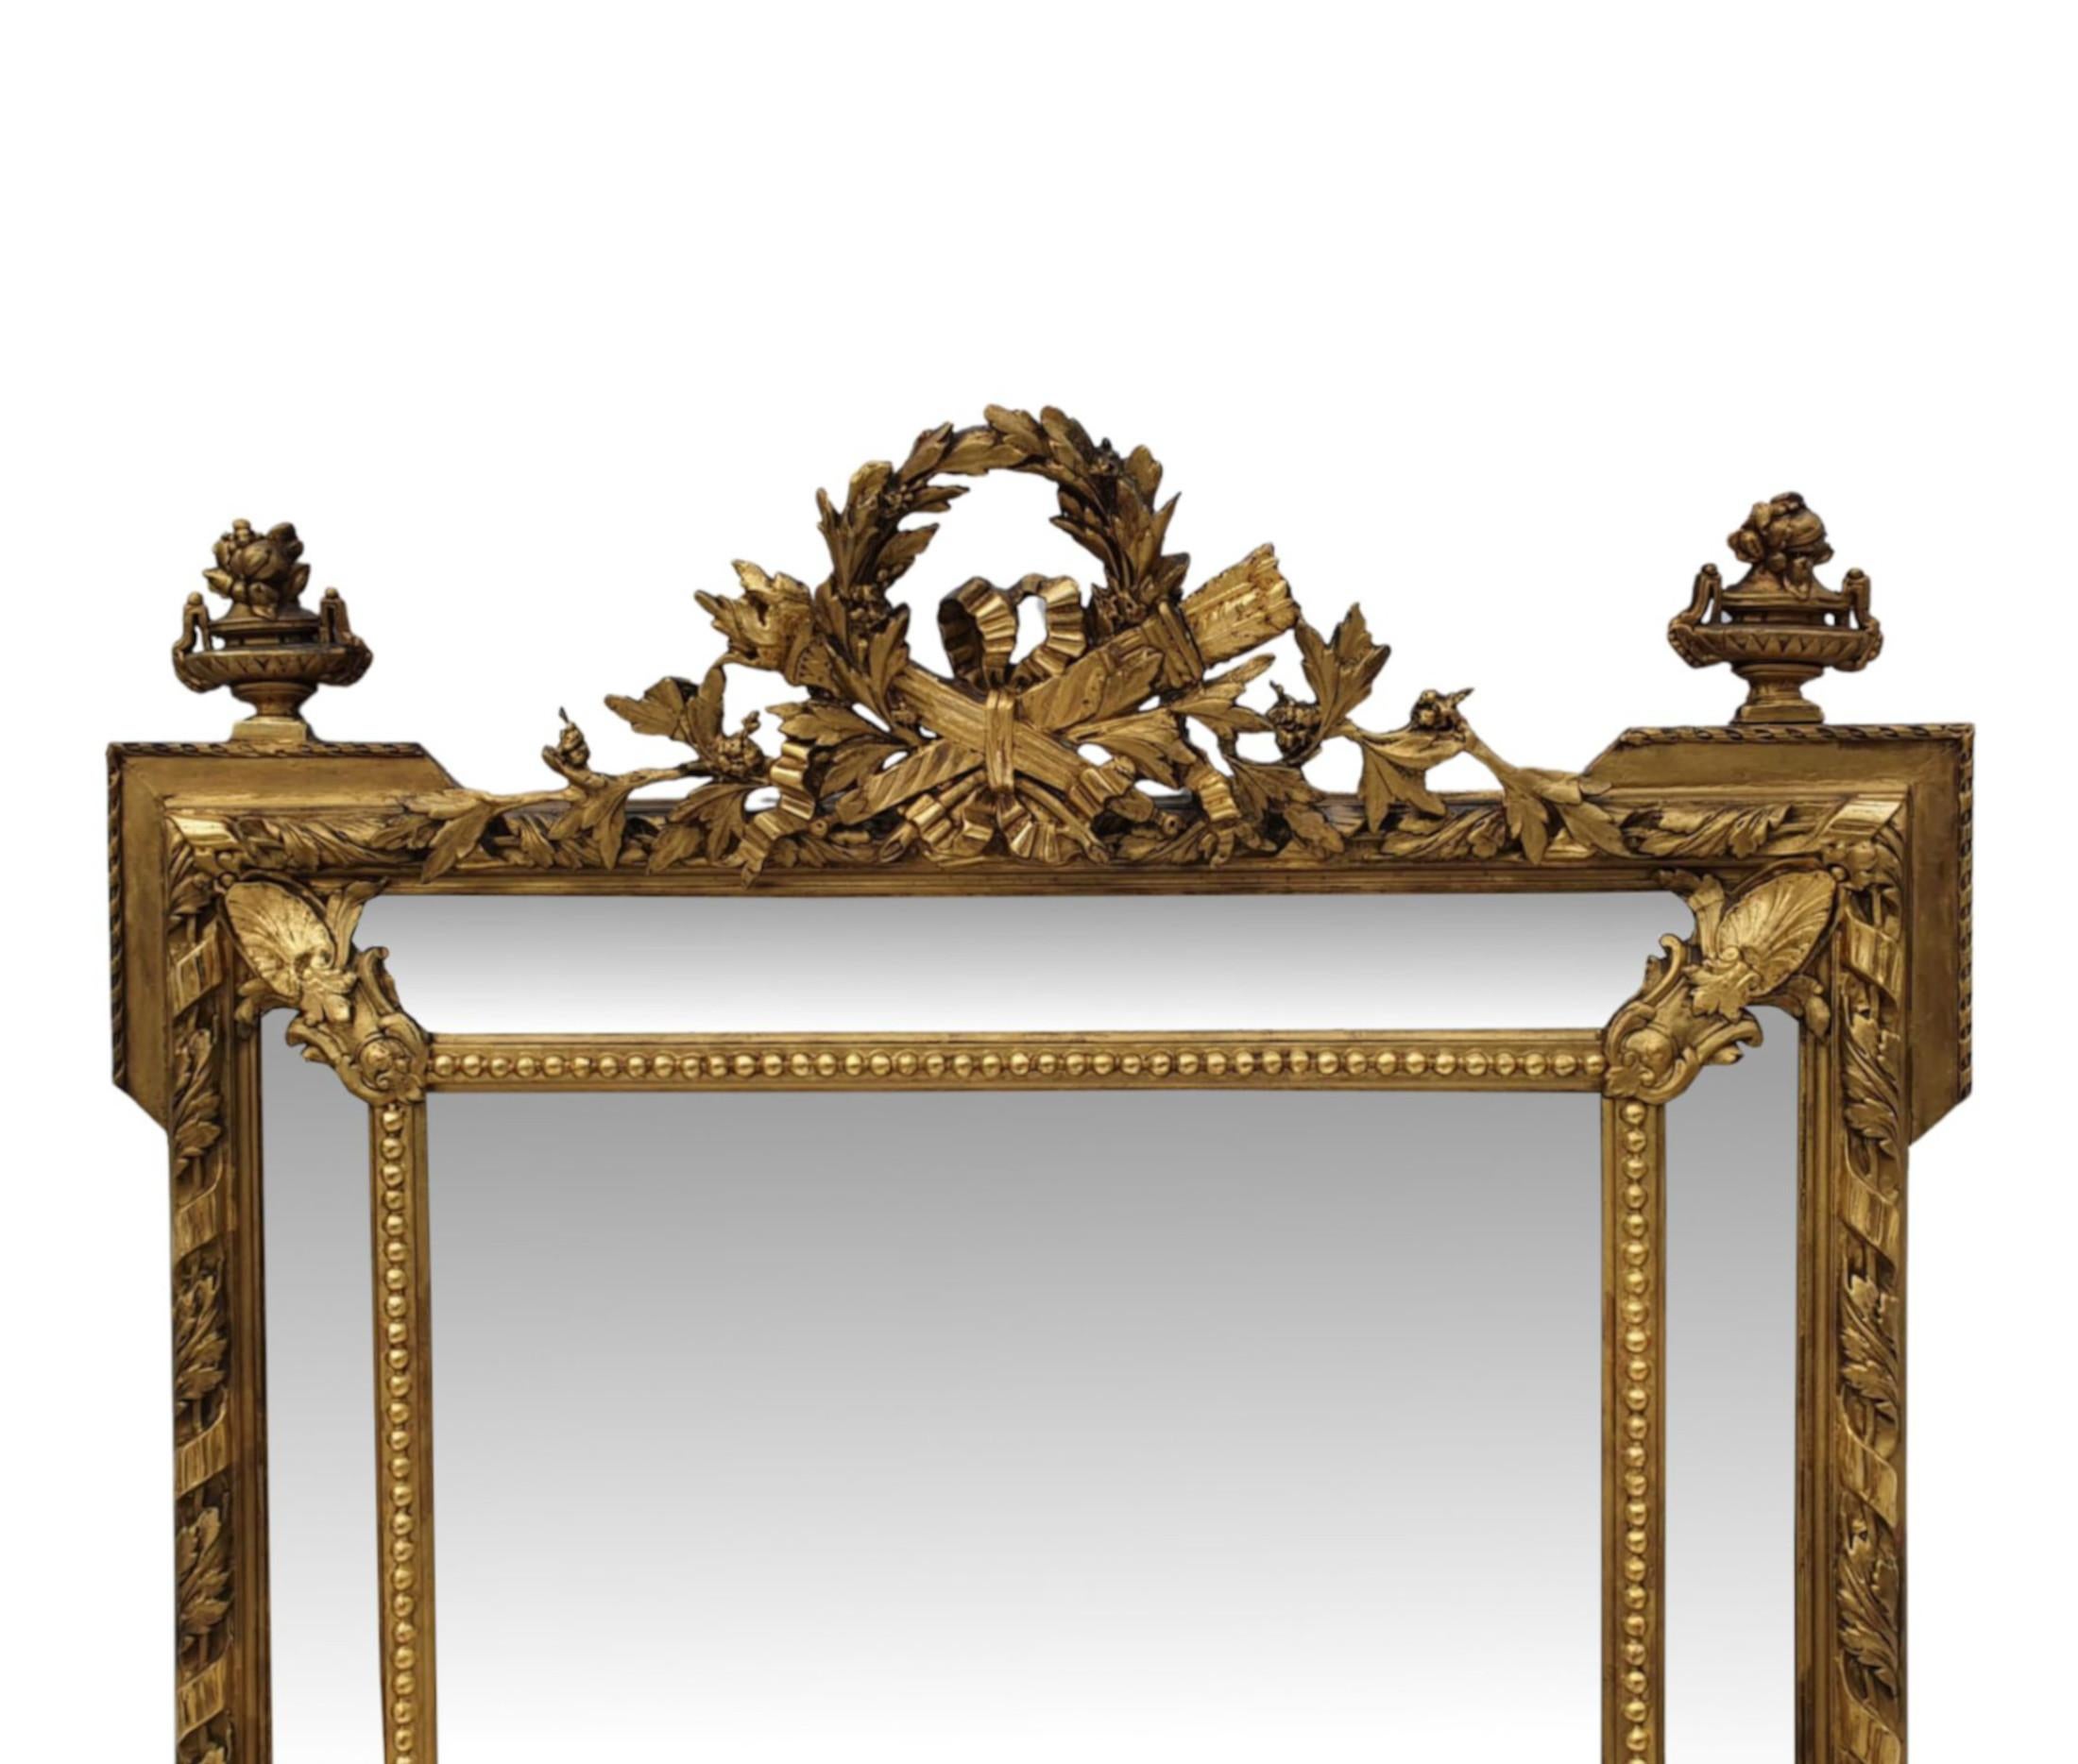 Très beau miroir d'entrée ou surmanteau en bois doré du 19ème siècle, de grandes proportions. La plaque de miroir de forme rectangulaire est placée dans un cadre en bois doré fabuleusement sculpté à la main, moulé et façonné, avec des détails de